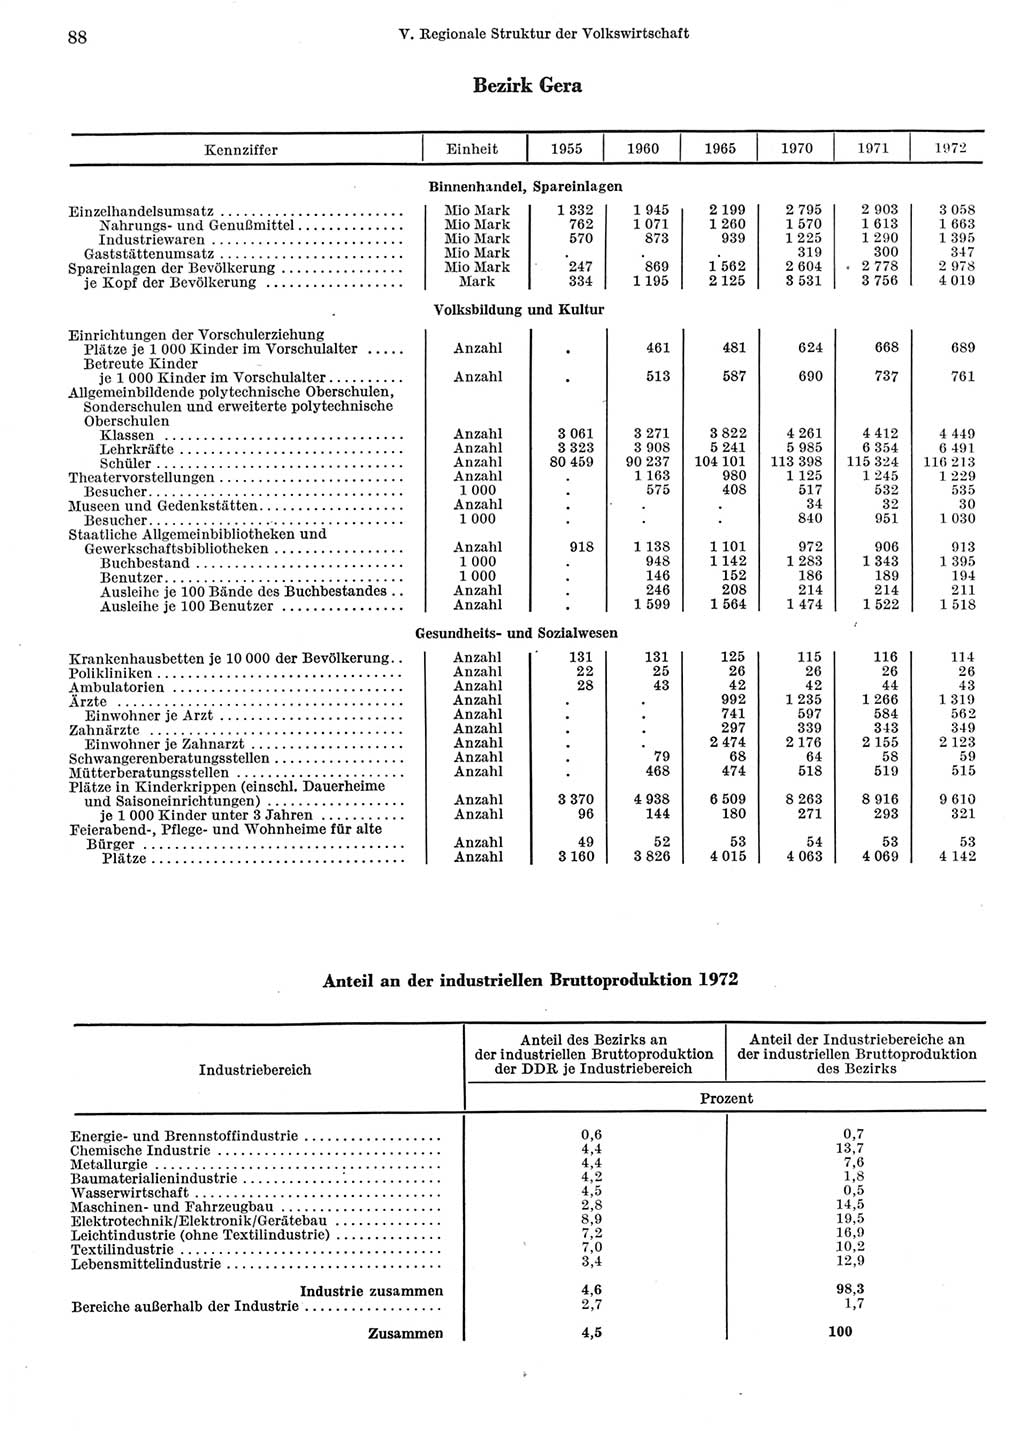 Statistisches Jahrbuch der Deutschen Demokratischen Republik (DDR) 1973, Seite 88 (Stat. Jb. DDR 1973, S. 88)